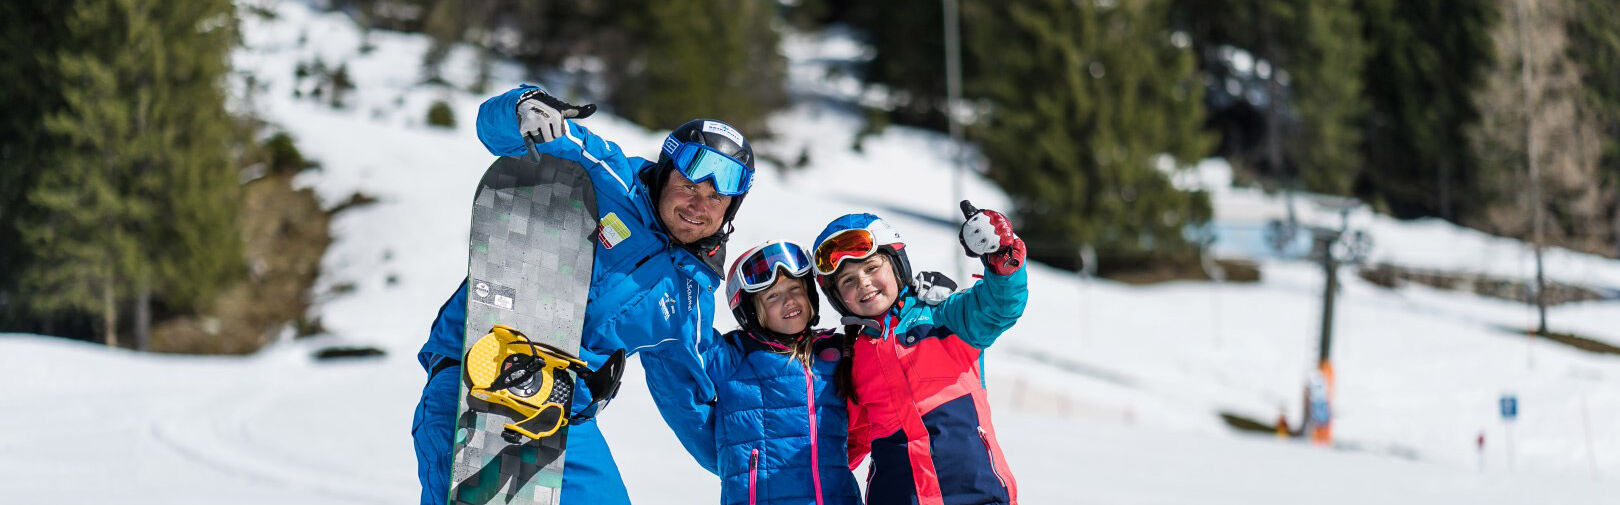 Leer snowboarden in Flachau - snowboardgroepcursussen voor beginners tot professionals